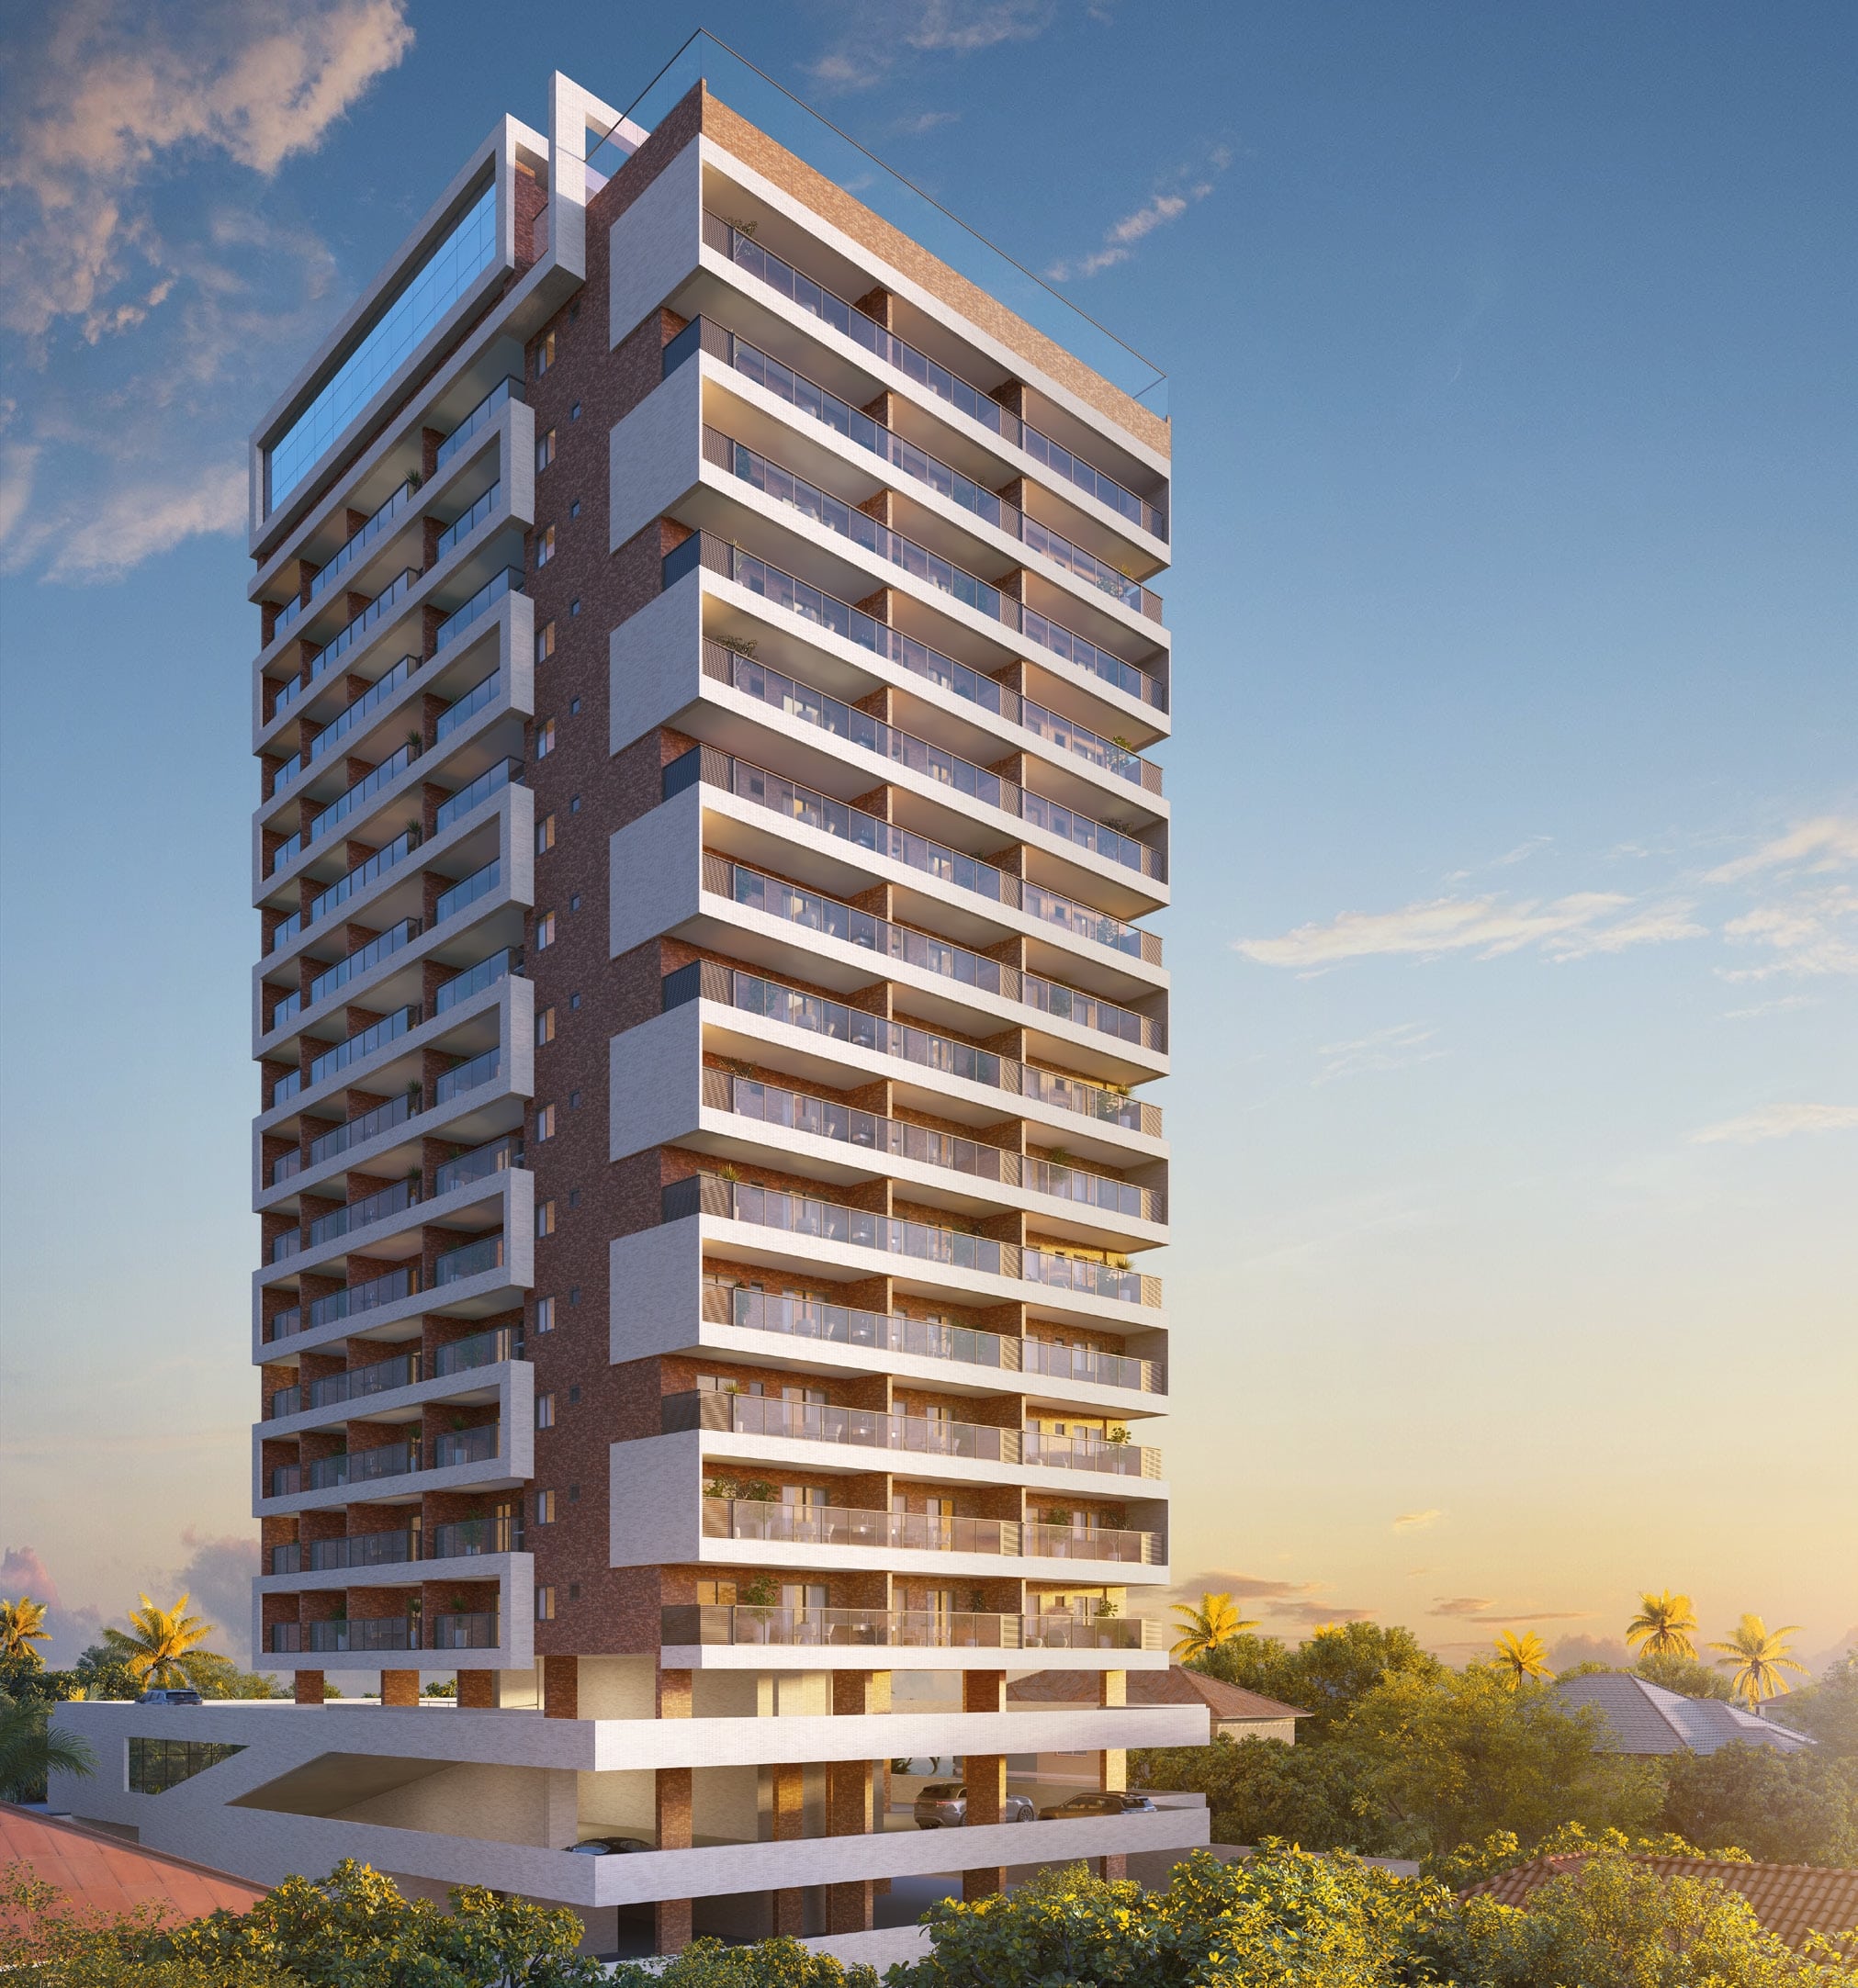 Imagem digital da fachada de um edifício de apartamentos populares de vários andares, Ilha de Lanai Pedra do Sal, com varandas espaçosas e design moderno, sob um céu claro.